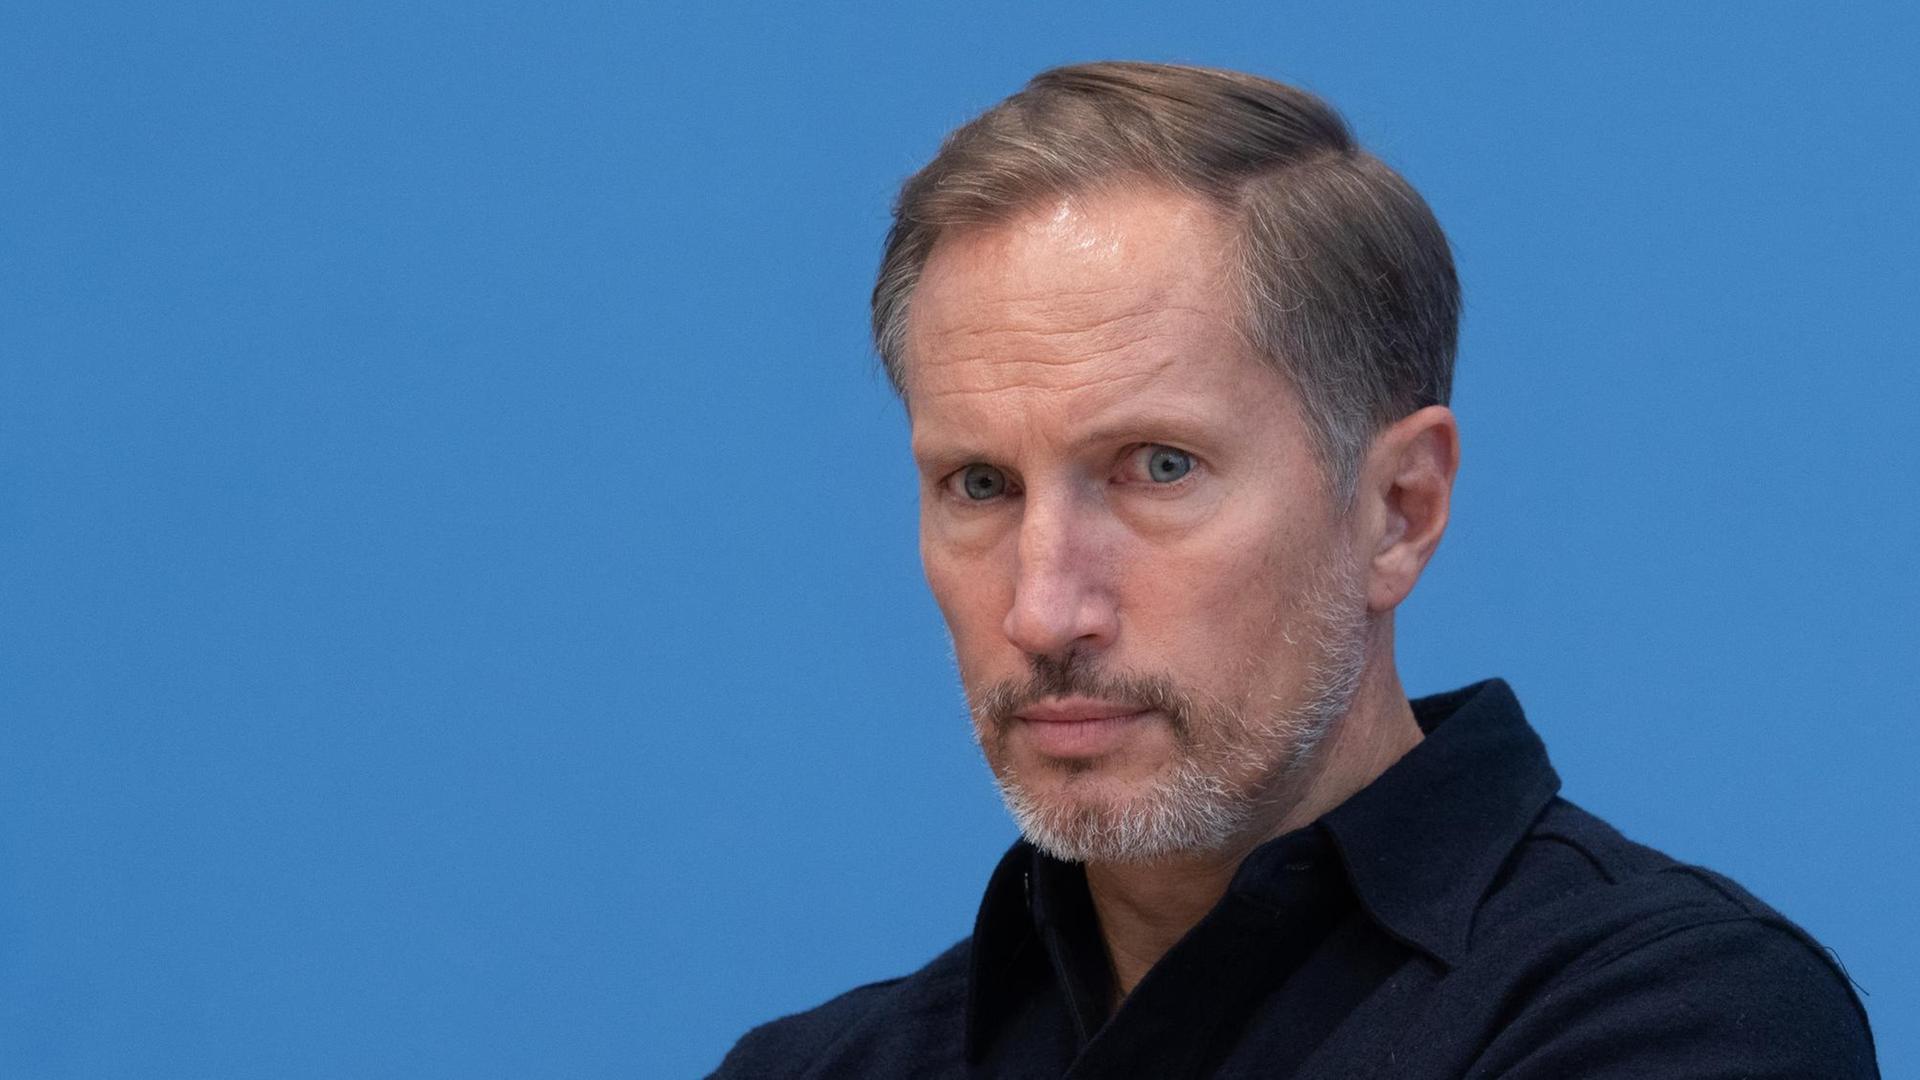 Porträtfoto des Schauspielers Benno Fürmann vor blauem Hintergrund während einer Pressekonferenz.